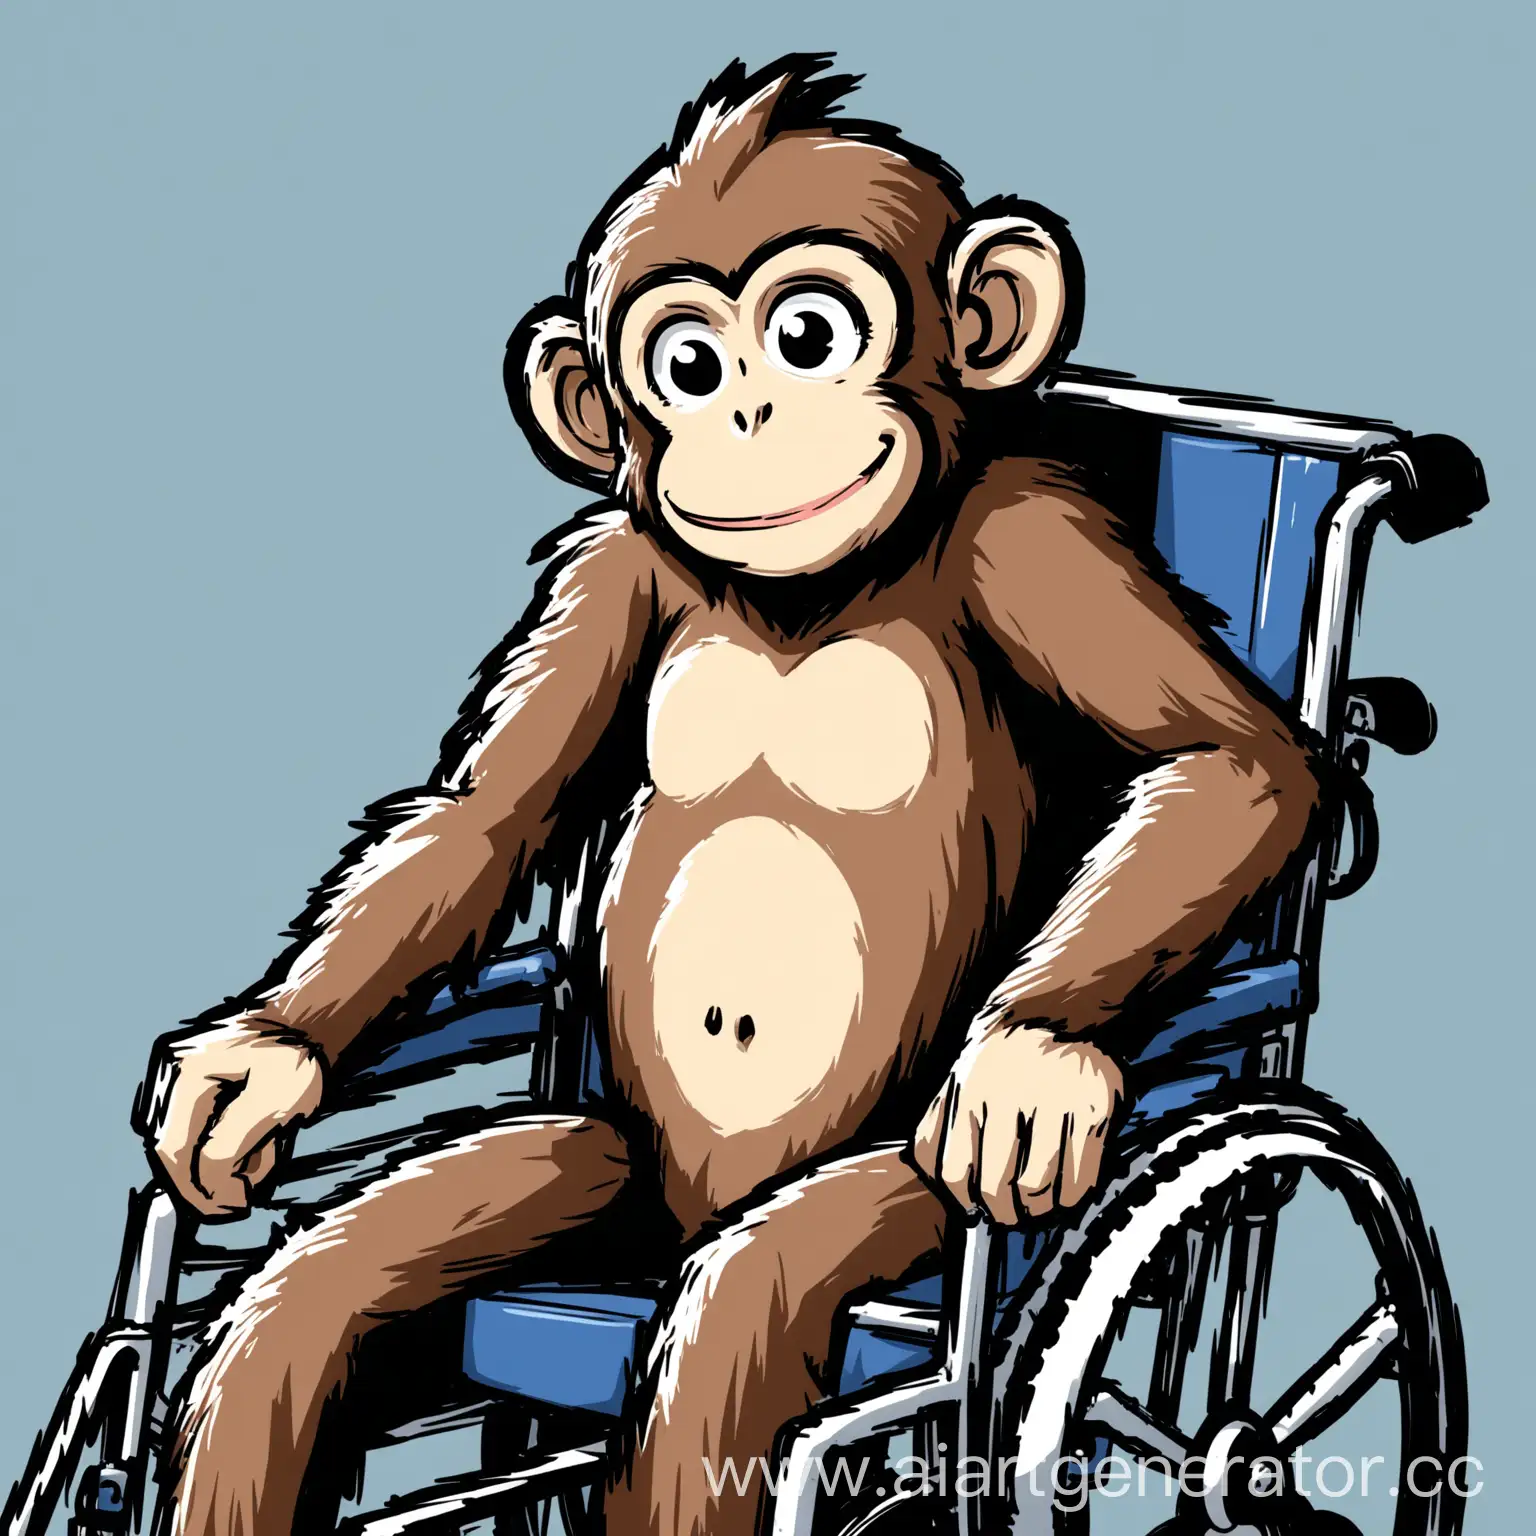 нарисуй обезьянку в инвалидном кресле с глупой улыбкой в комиксном стиле